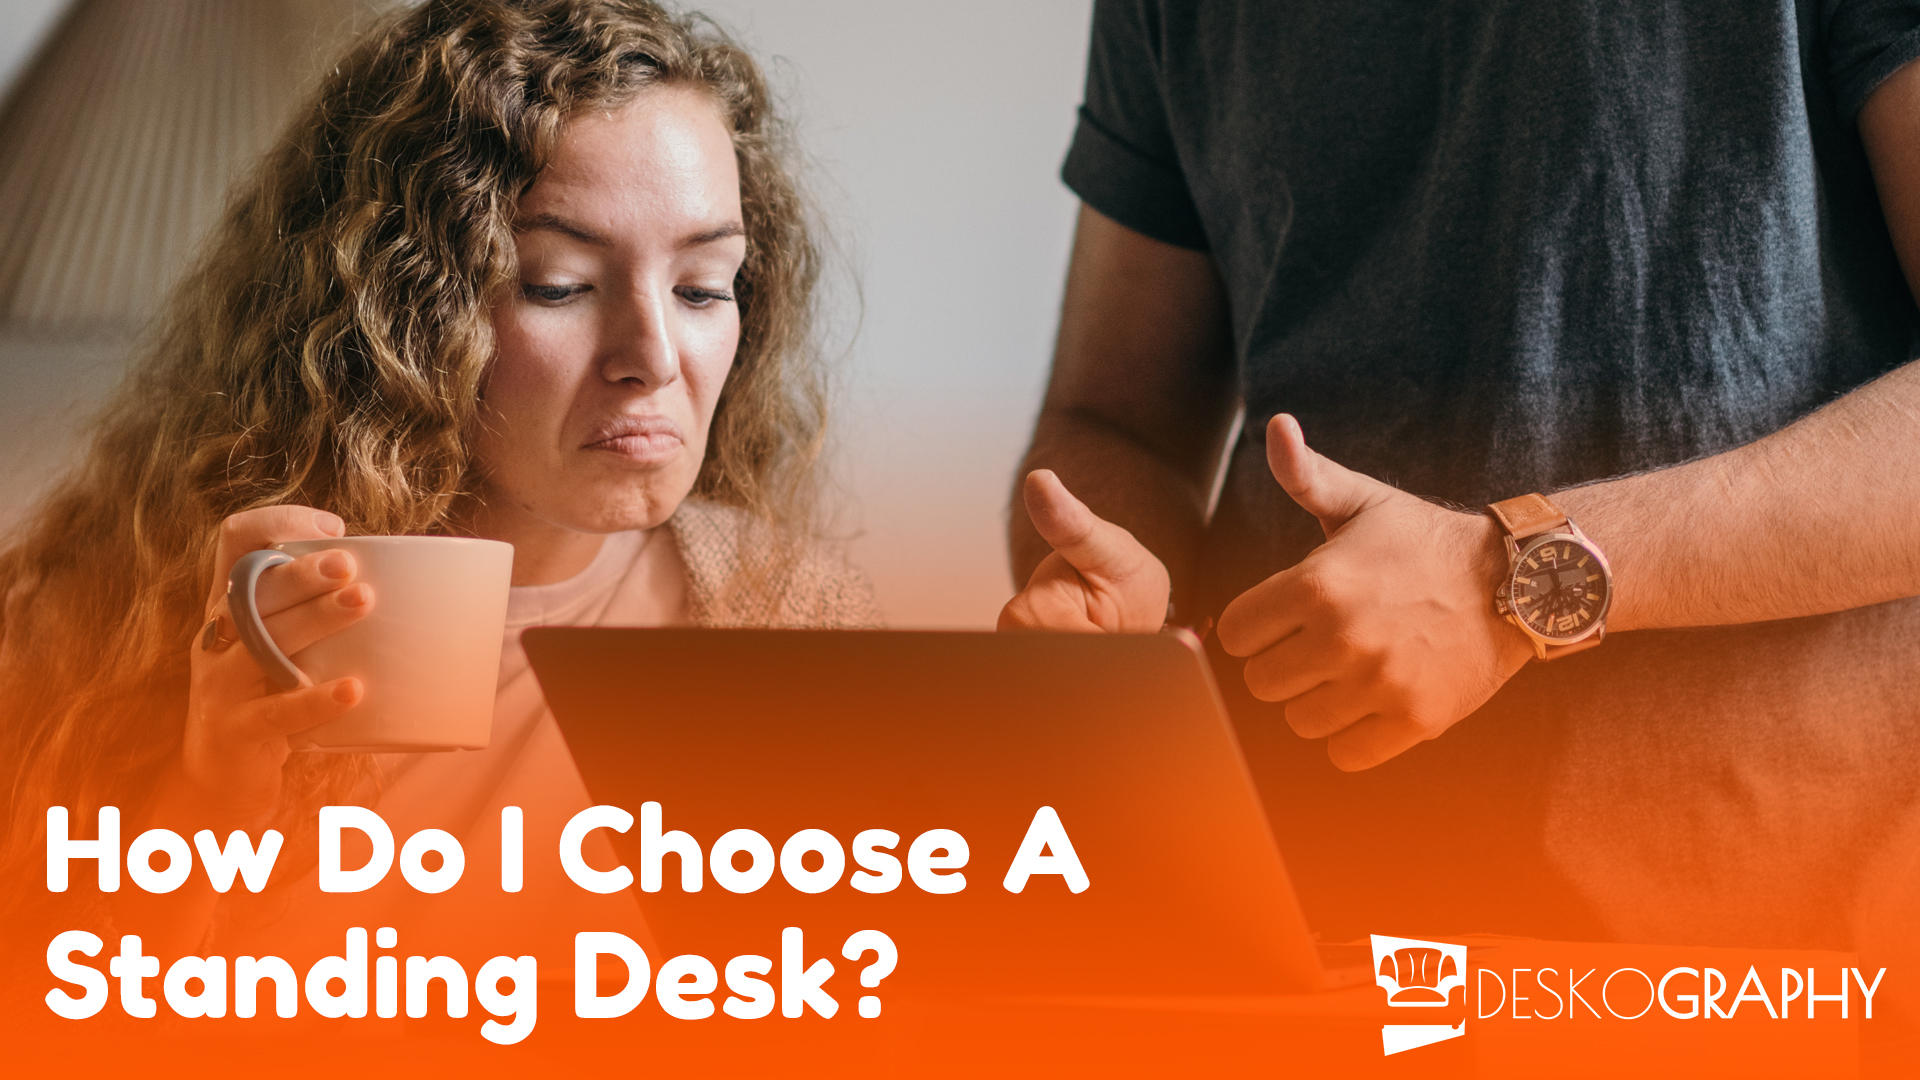 How do I choose a standing desk